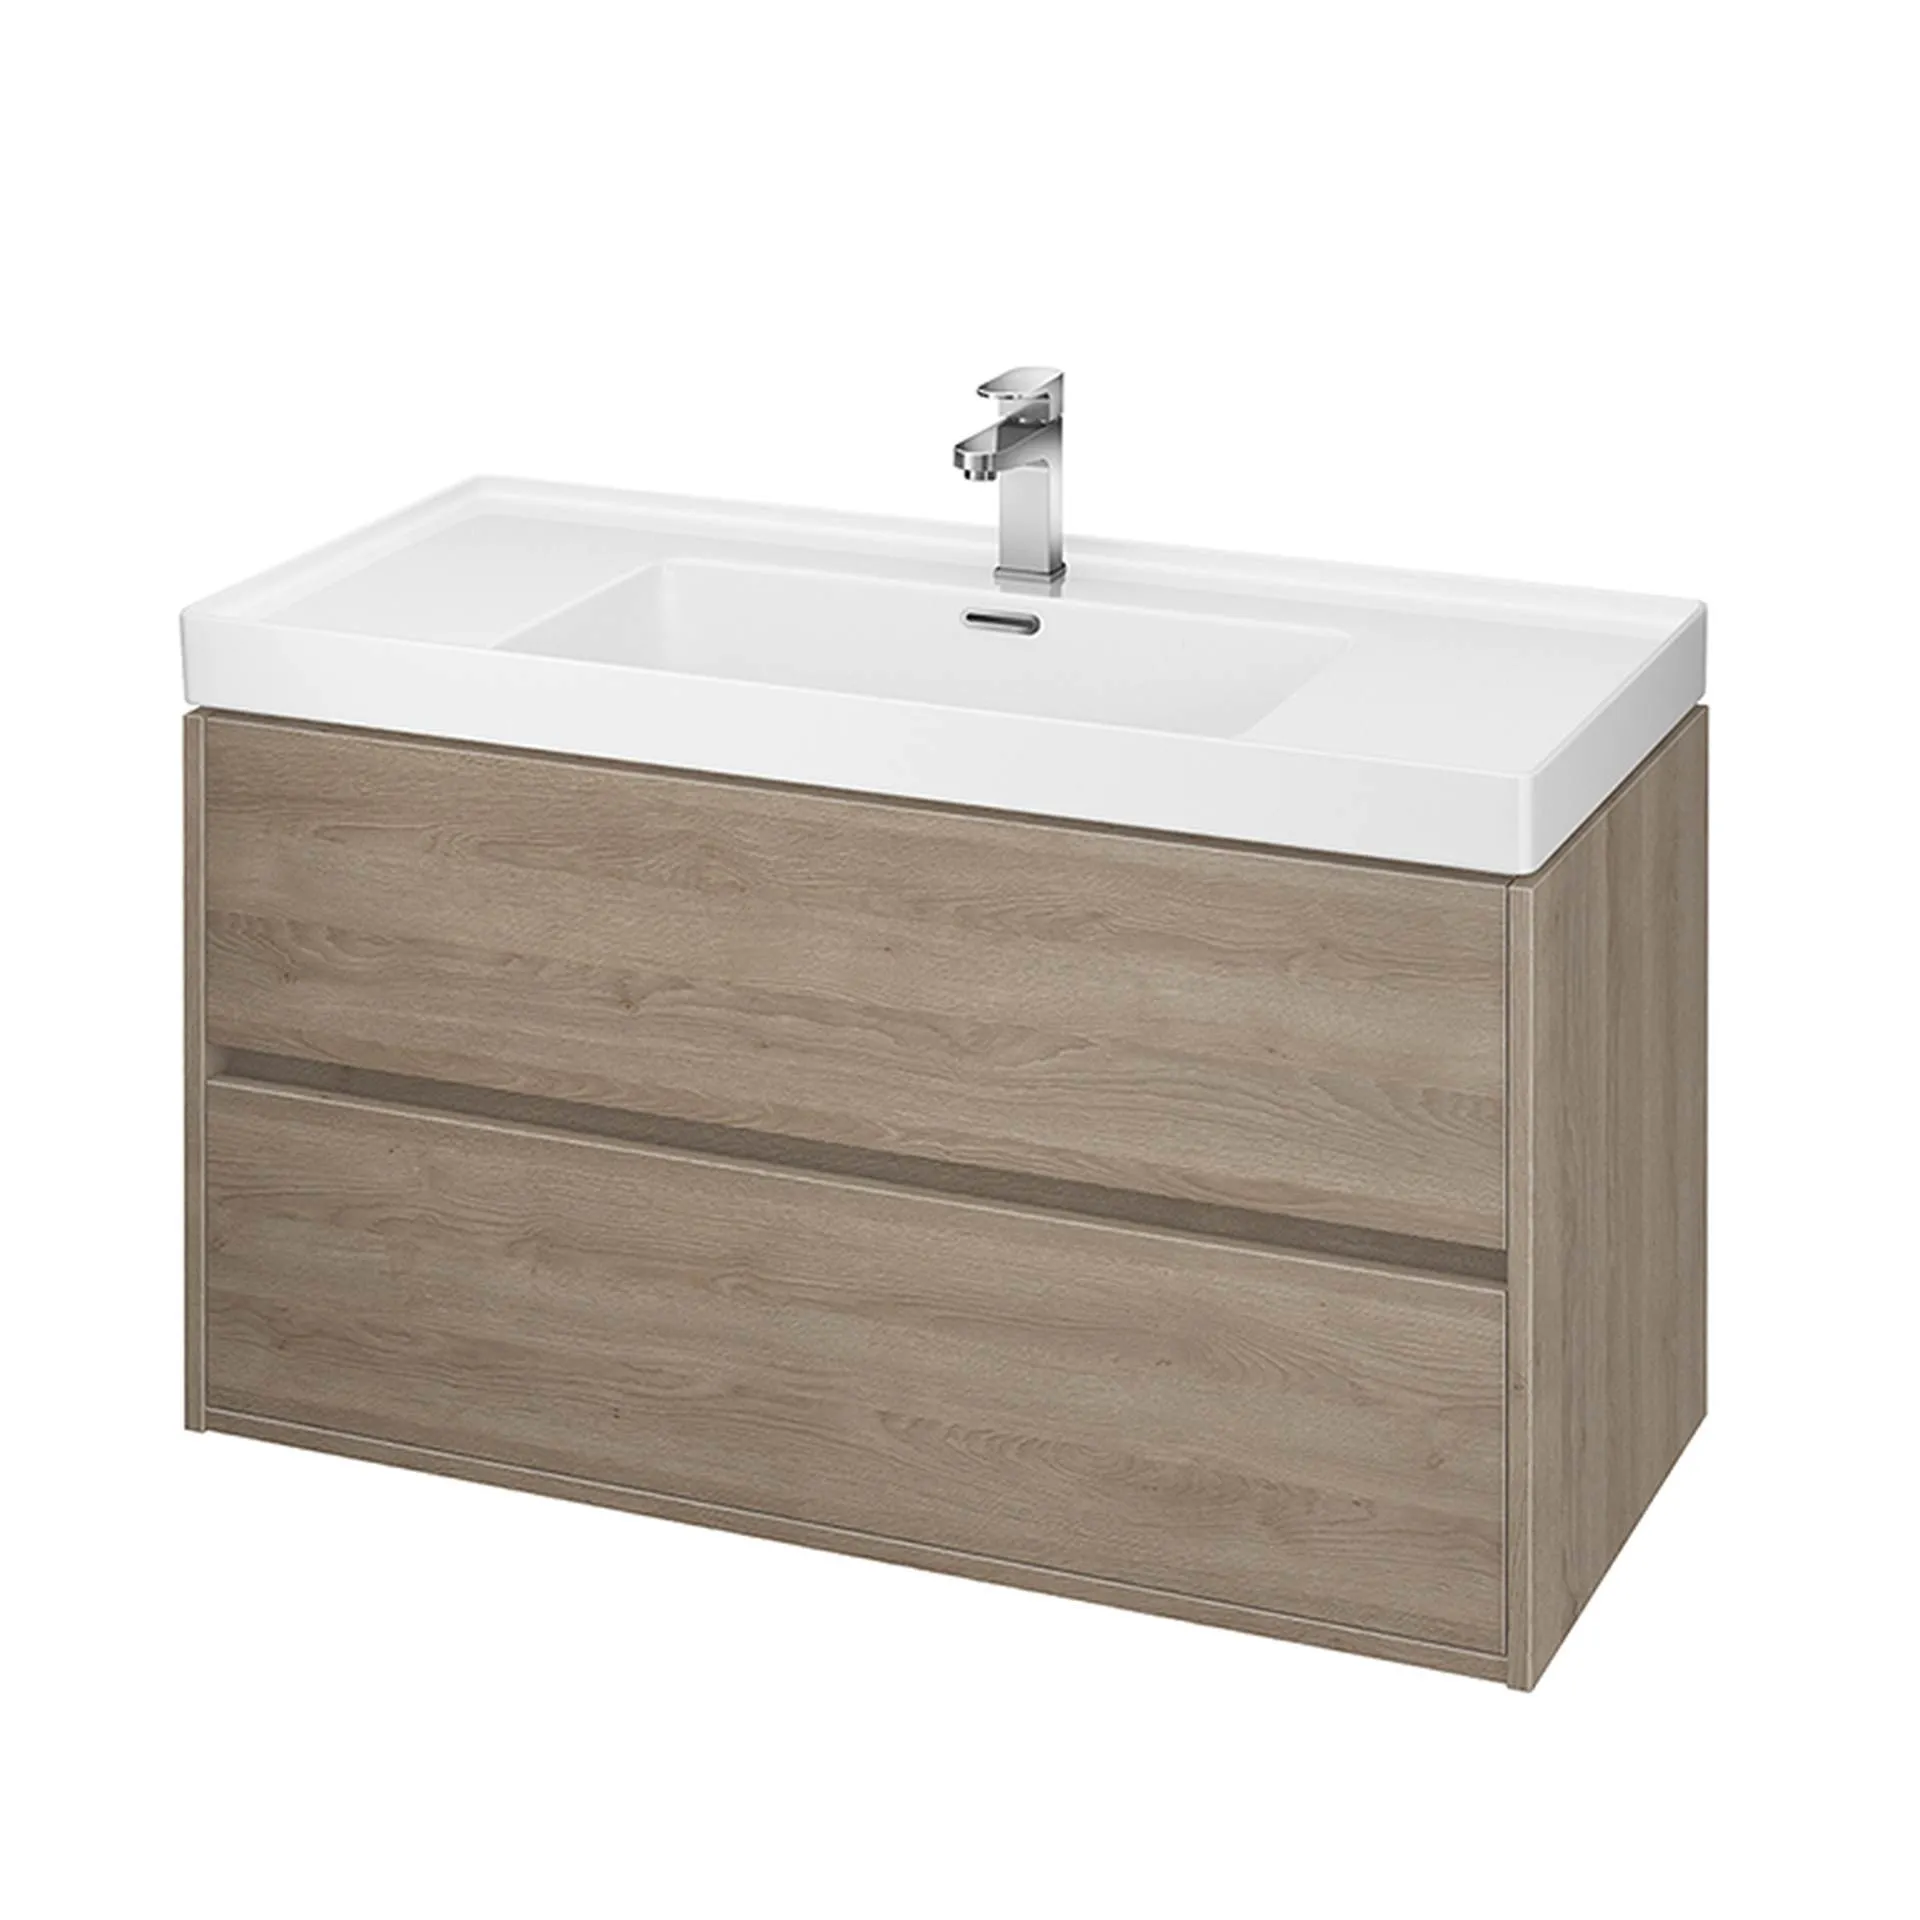 Szafka łazienkowa pod umywalkę Cersanit Crea 100 cm jasne drewno S924-011